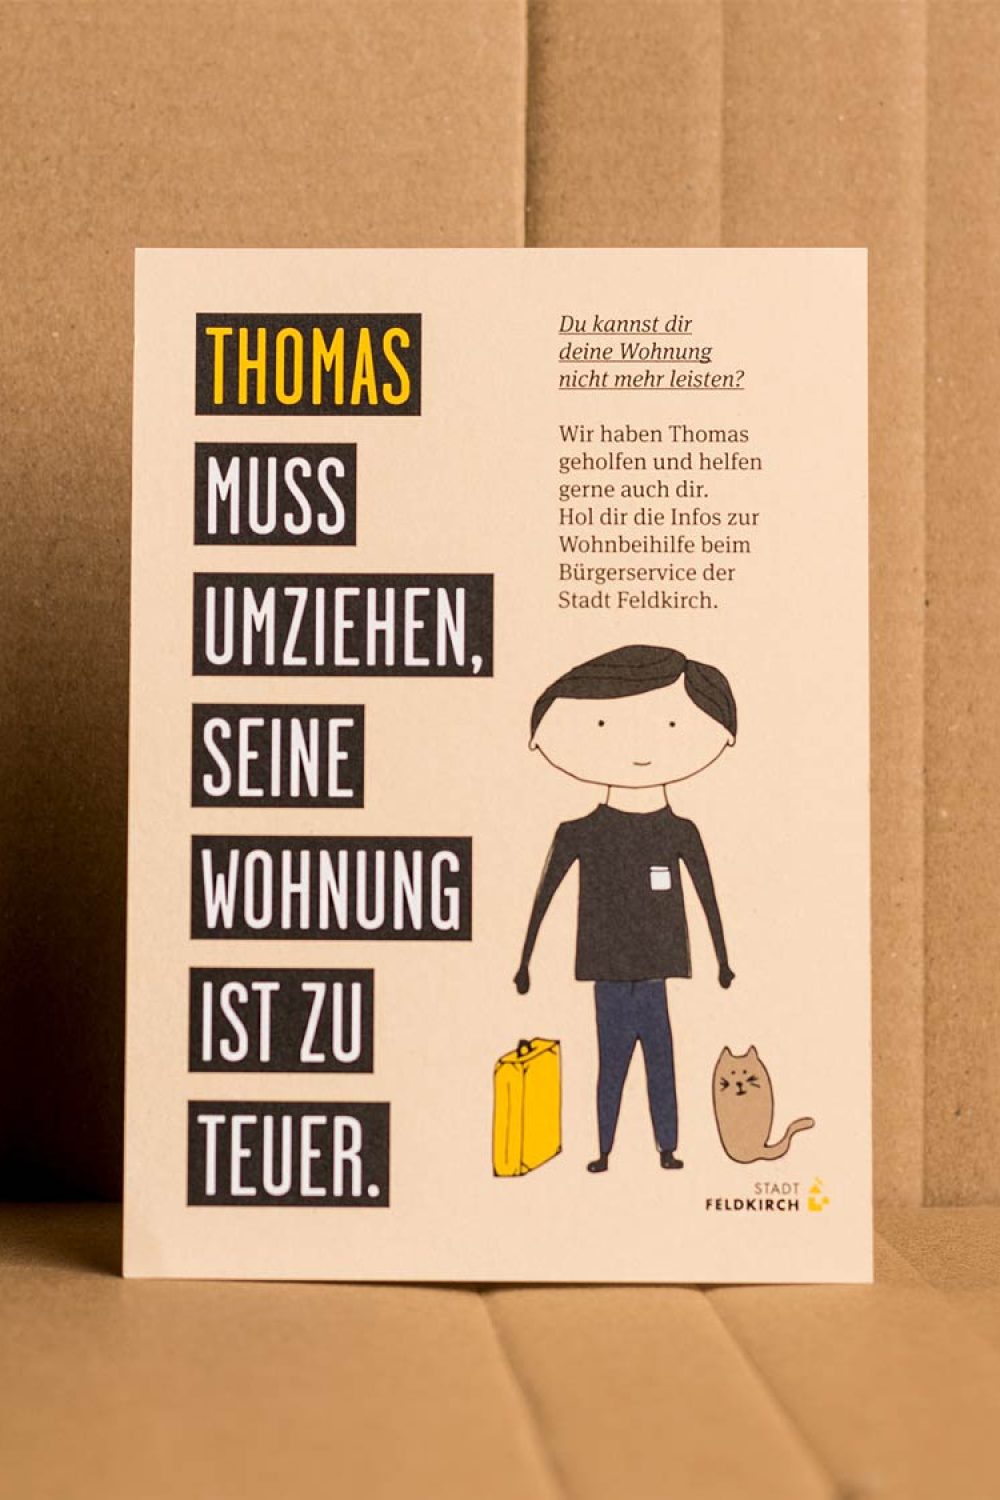 Werbekampagne – Amt der Stadt Feldkirch – Postkarten – Sujet Thomas